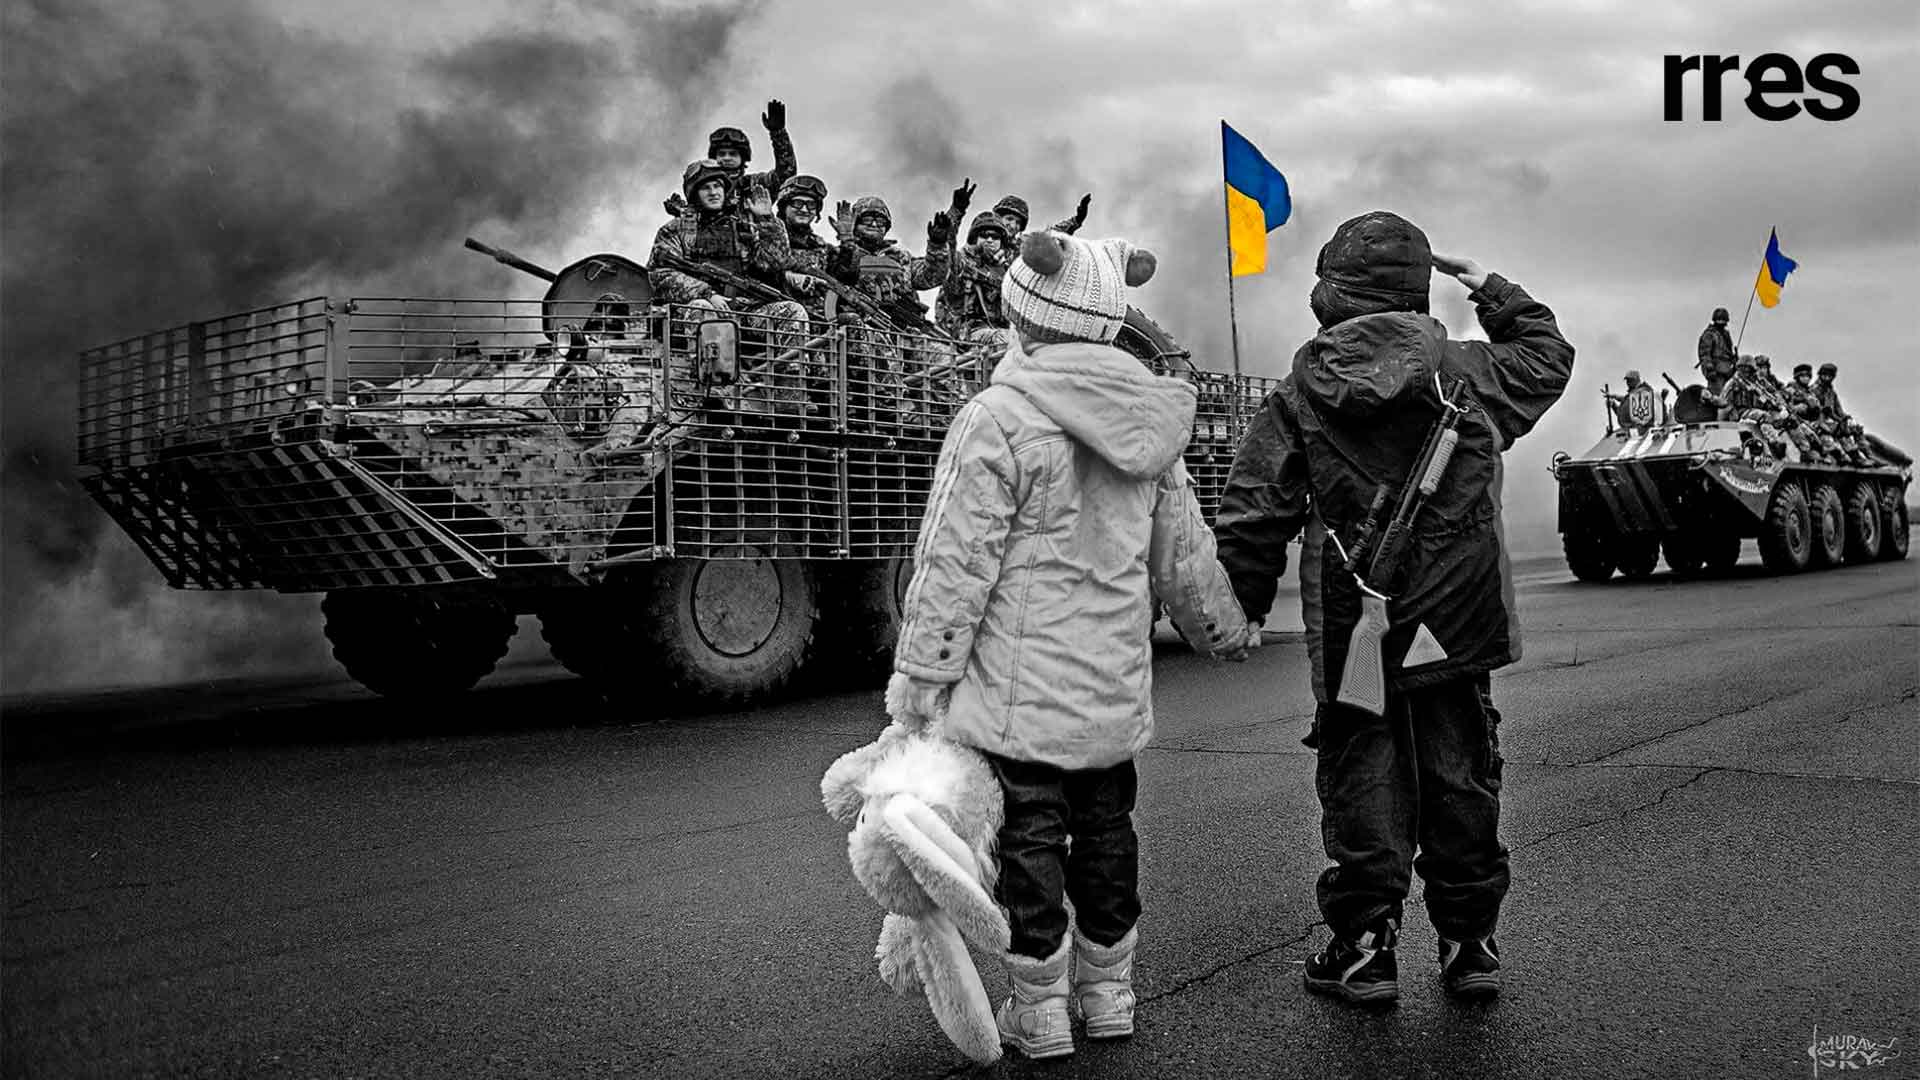 #DiarioDeUcrania Nuevo panorama de la guerra en Ucrania, por Tony Bianchi